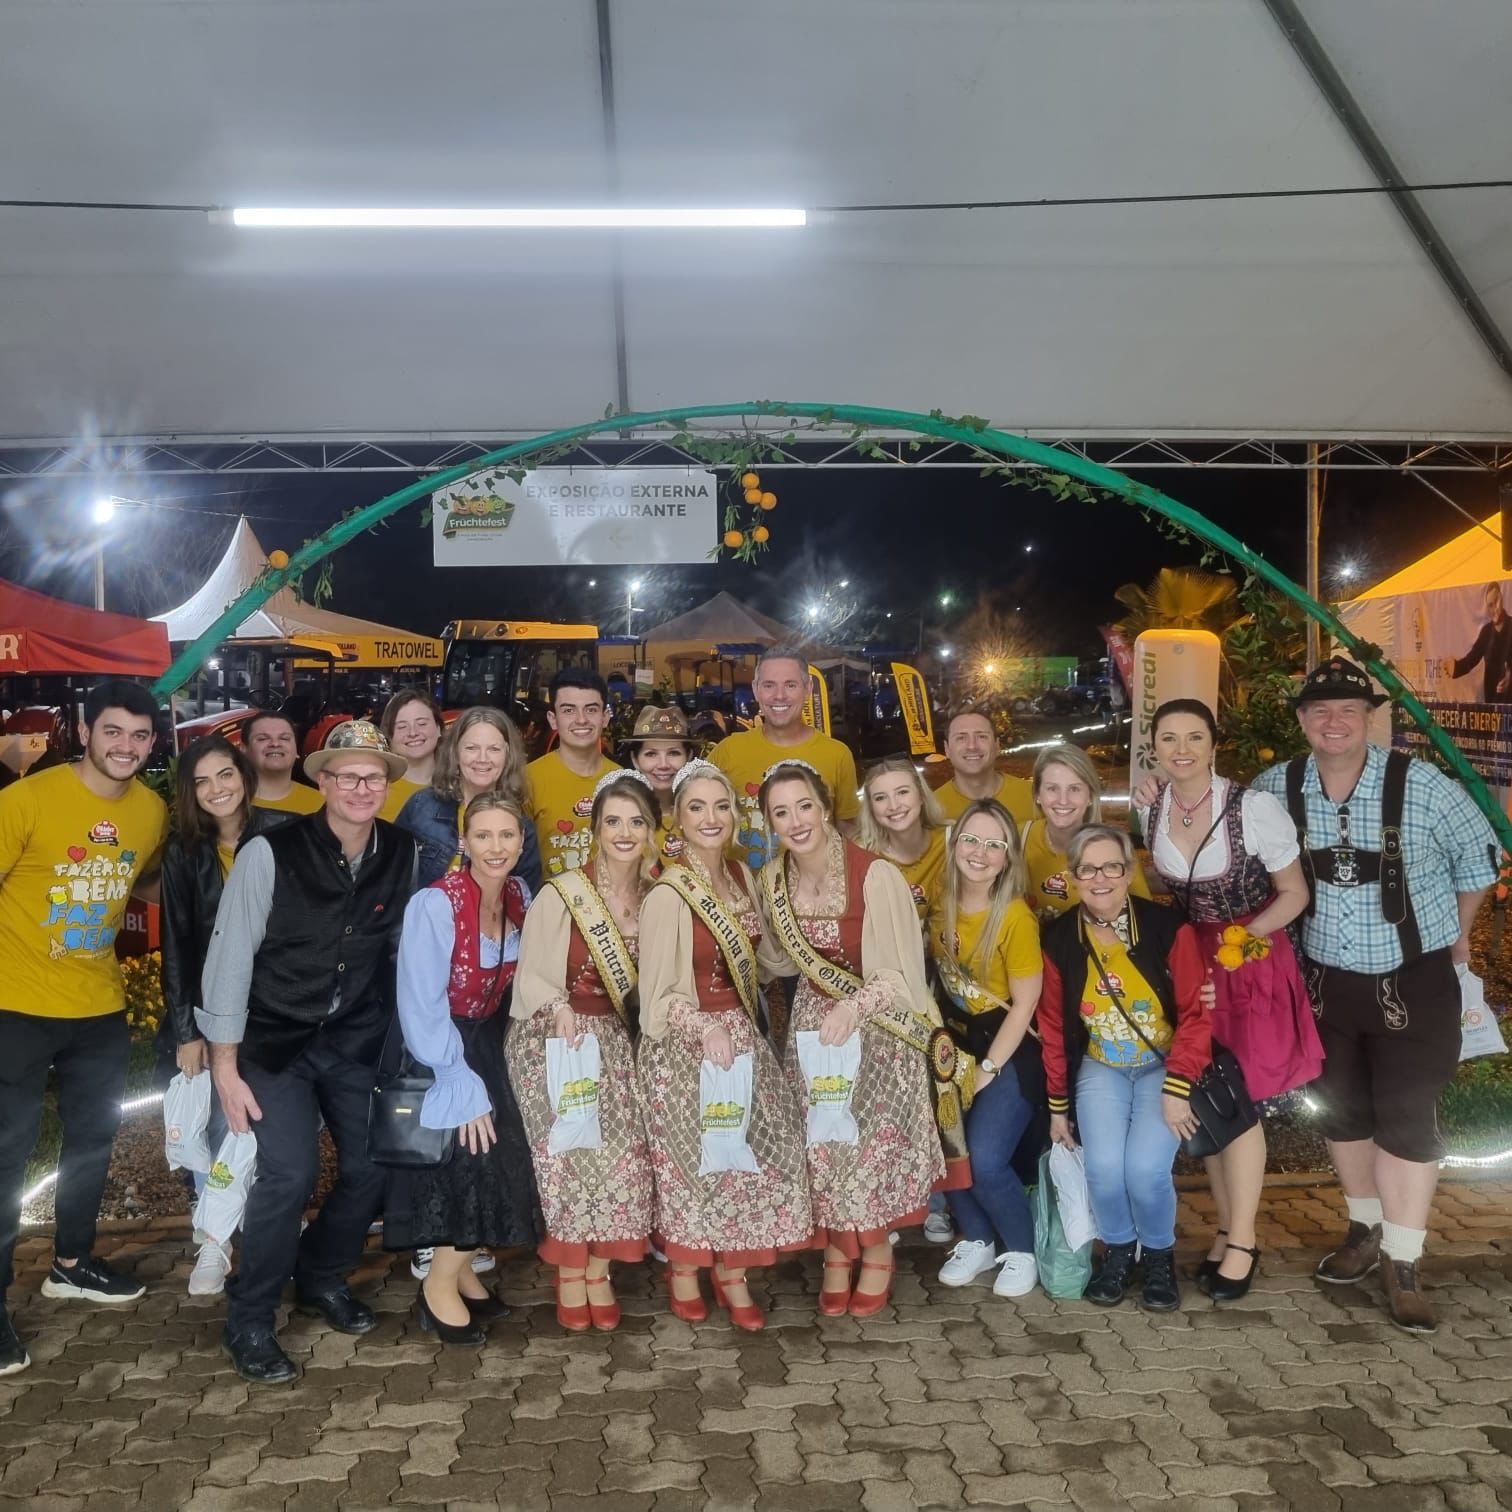 Comitiva da Oktoberfest de Igrejinha divulga festa pela região